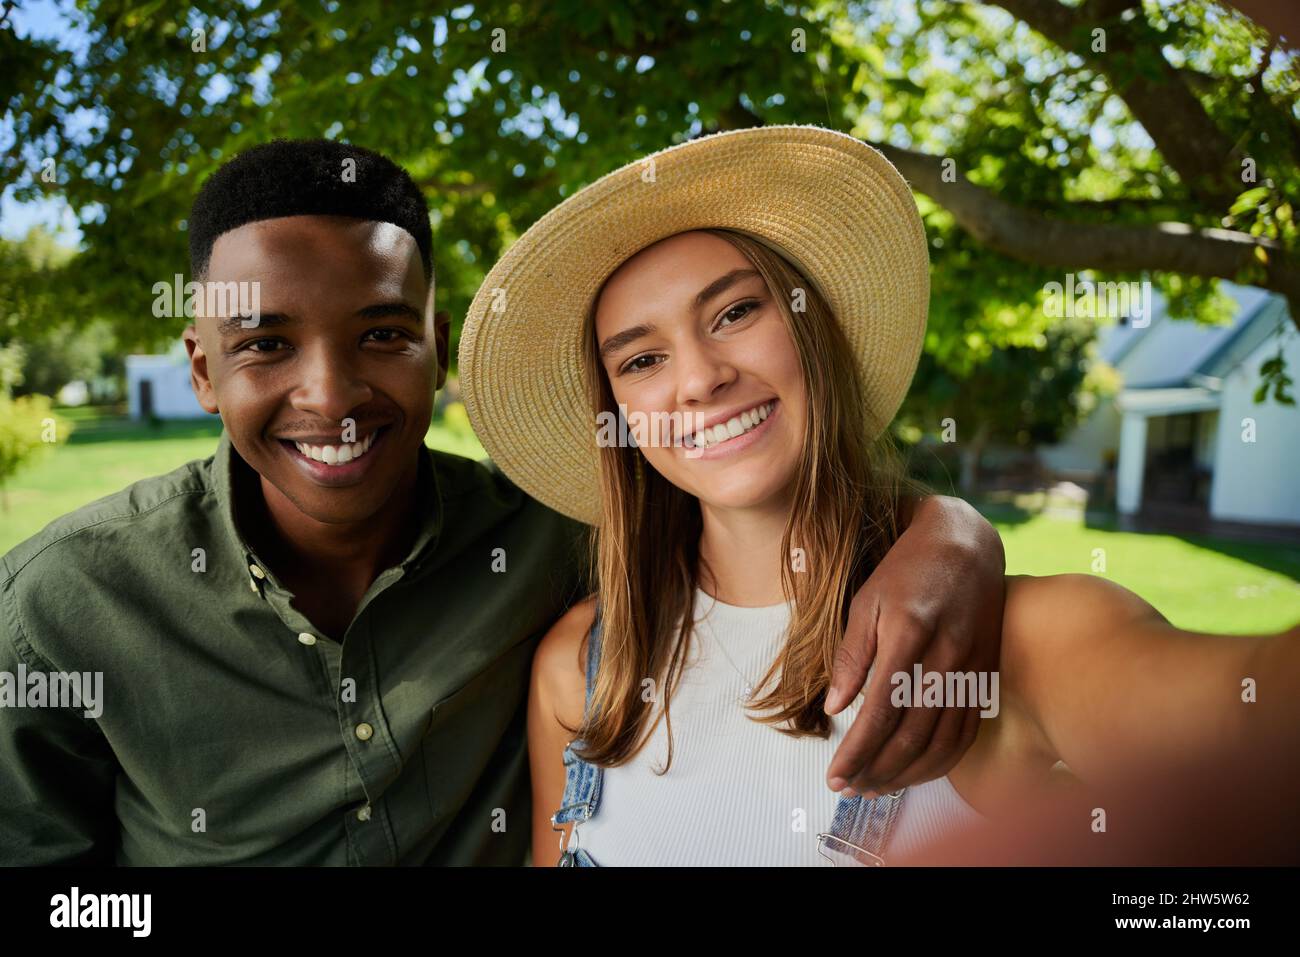 Männliche und weibliche Landwirte mit gemischter Rasse, die im Freien stehen und Selfie mit einem Mobilfunkgerät machen Stockfoto